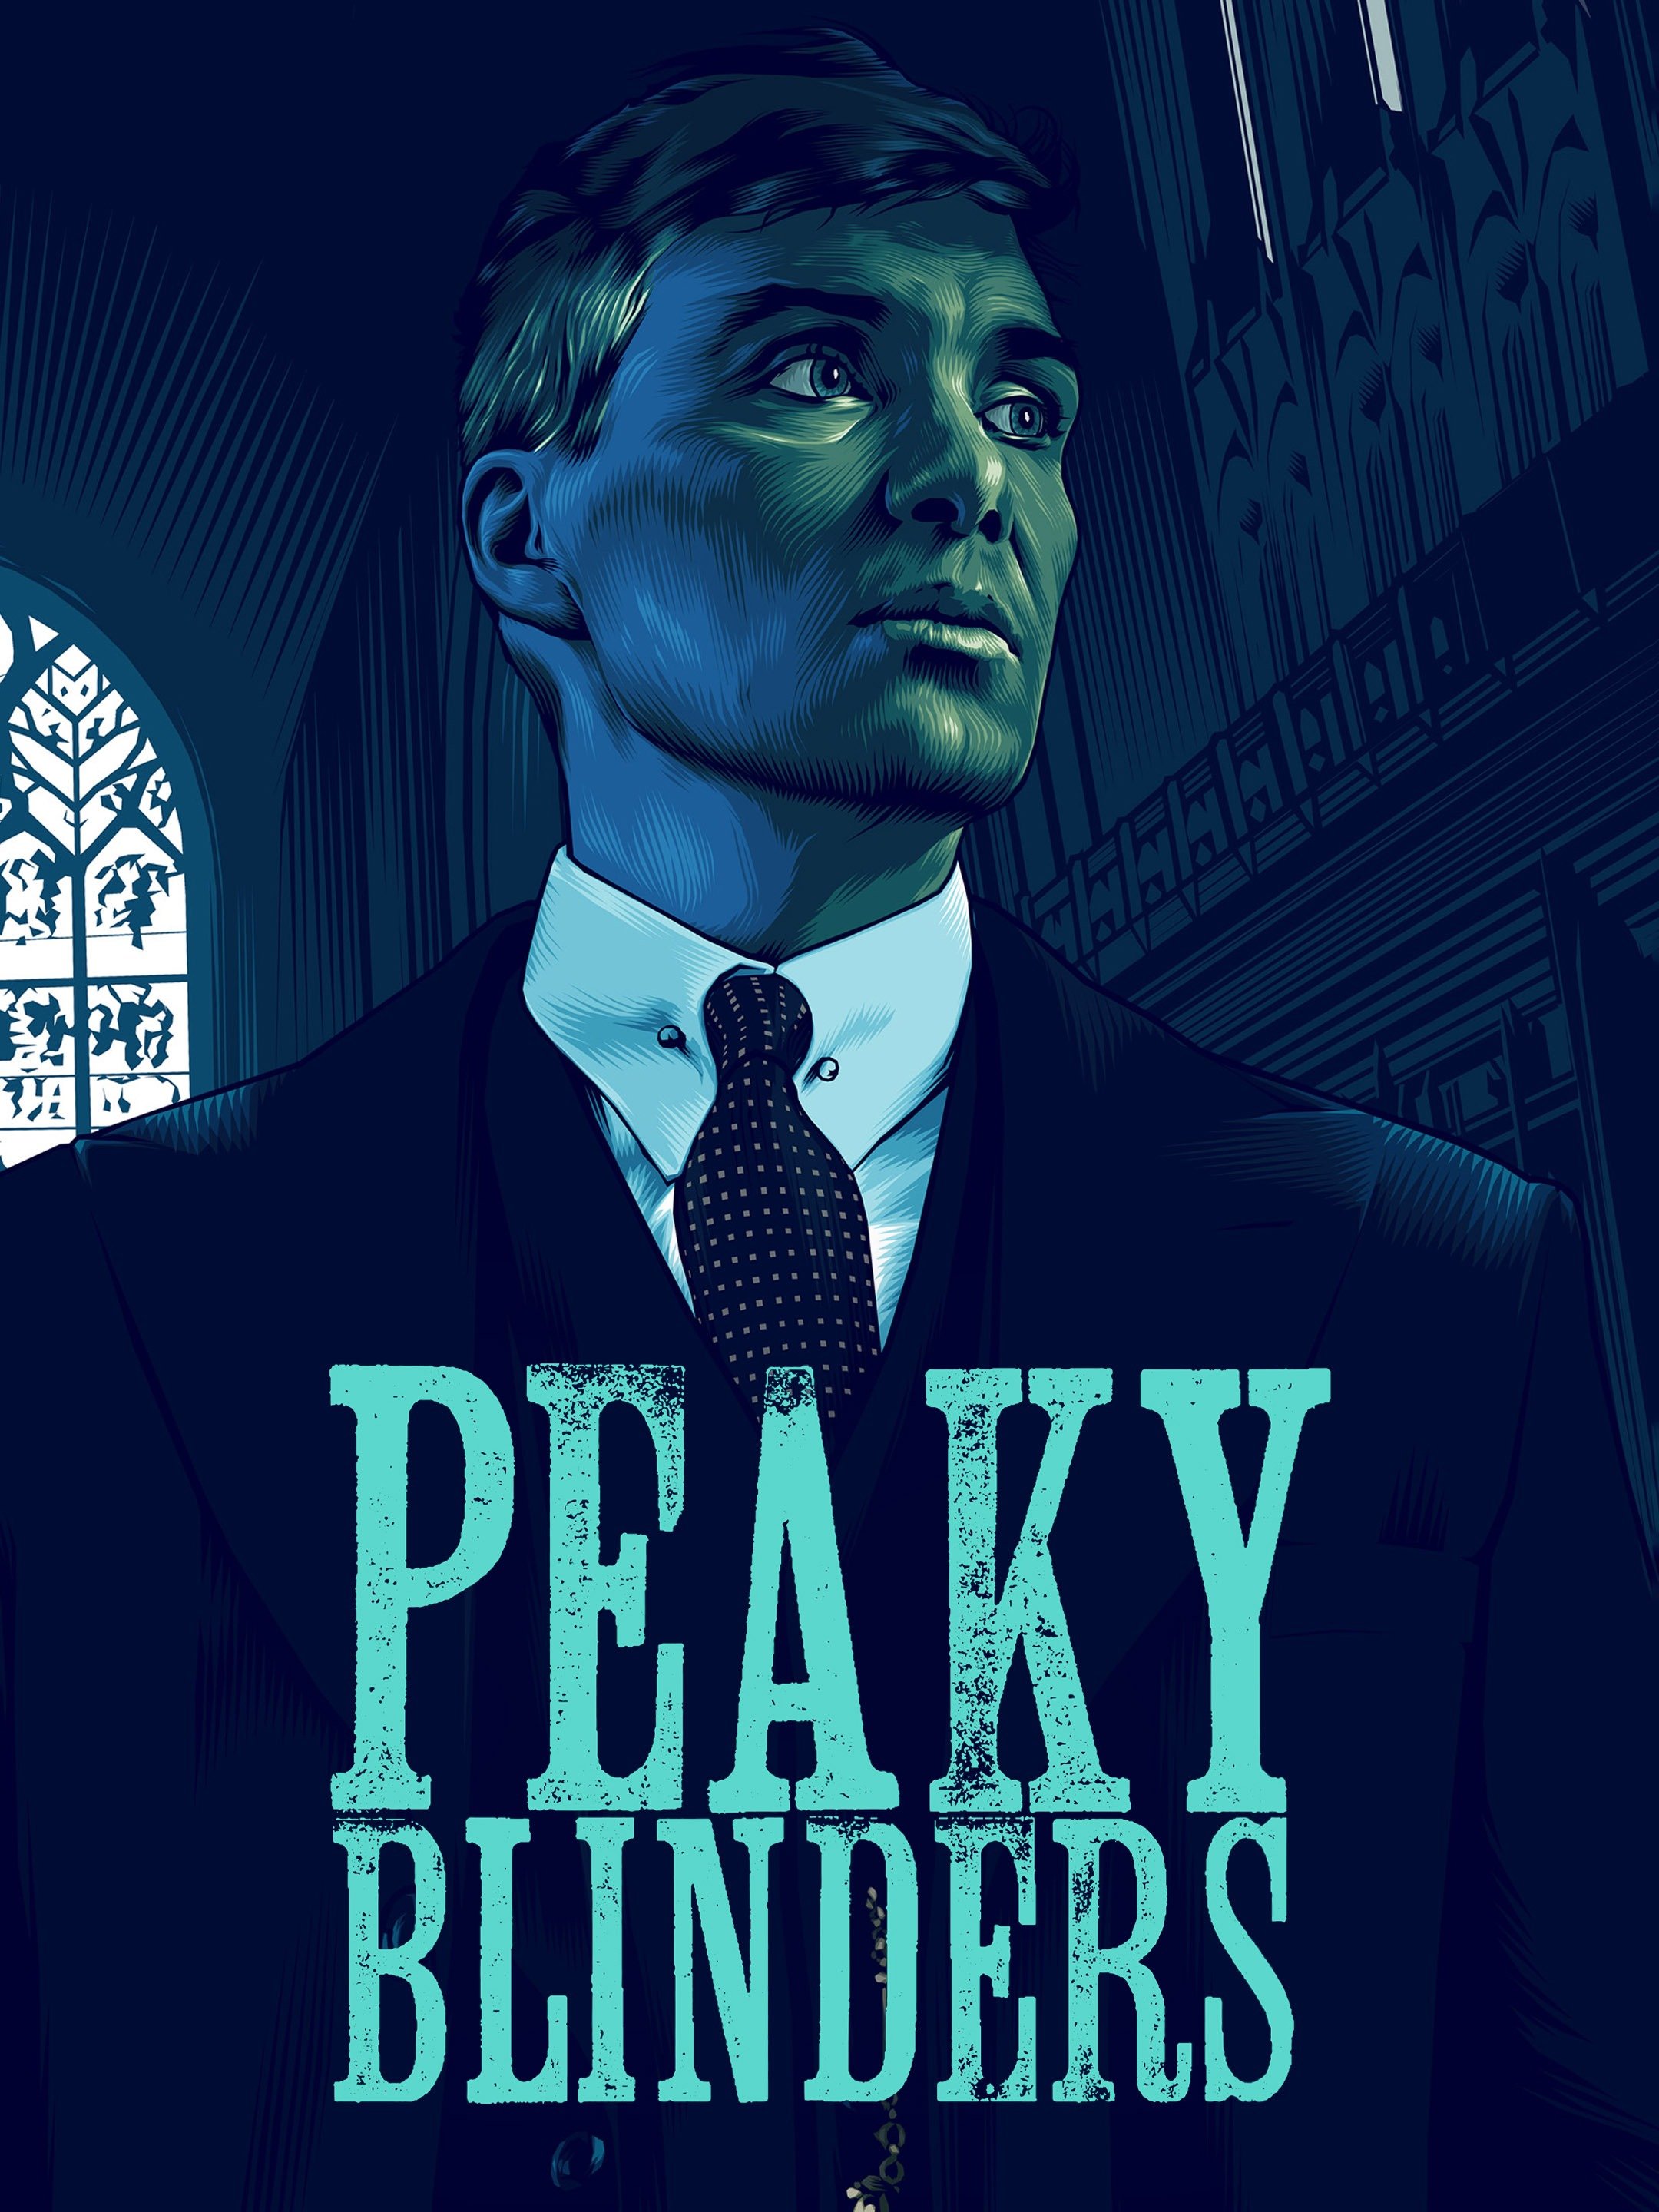 Peaky Blinders poster